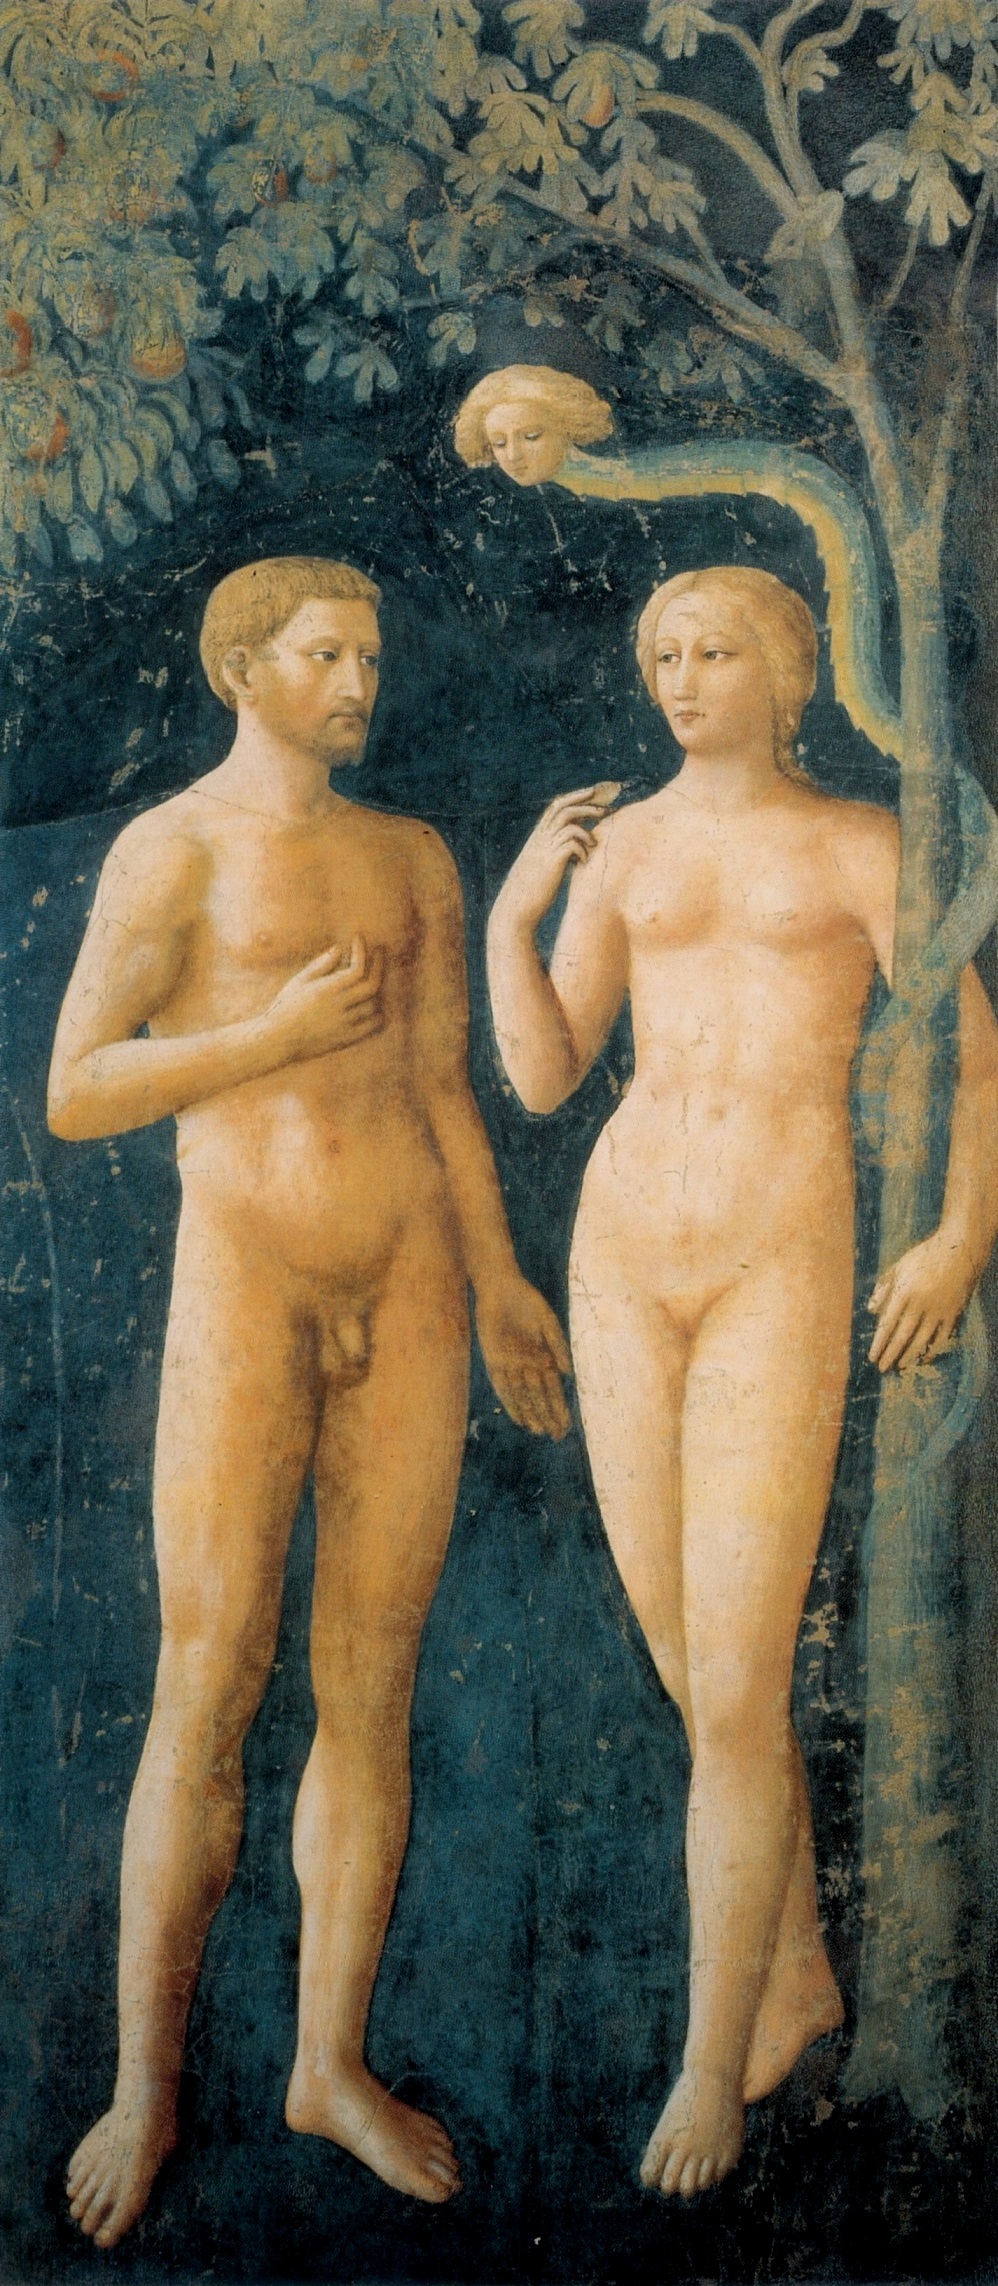 Masolino, Tentazione di Adamo ed Eva
